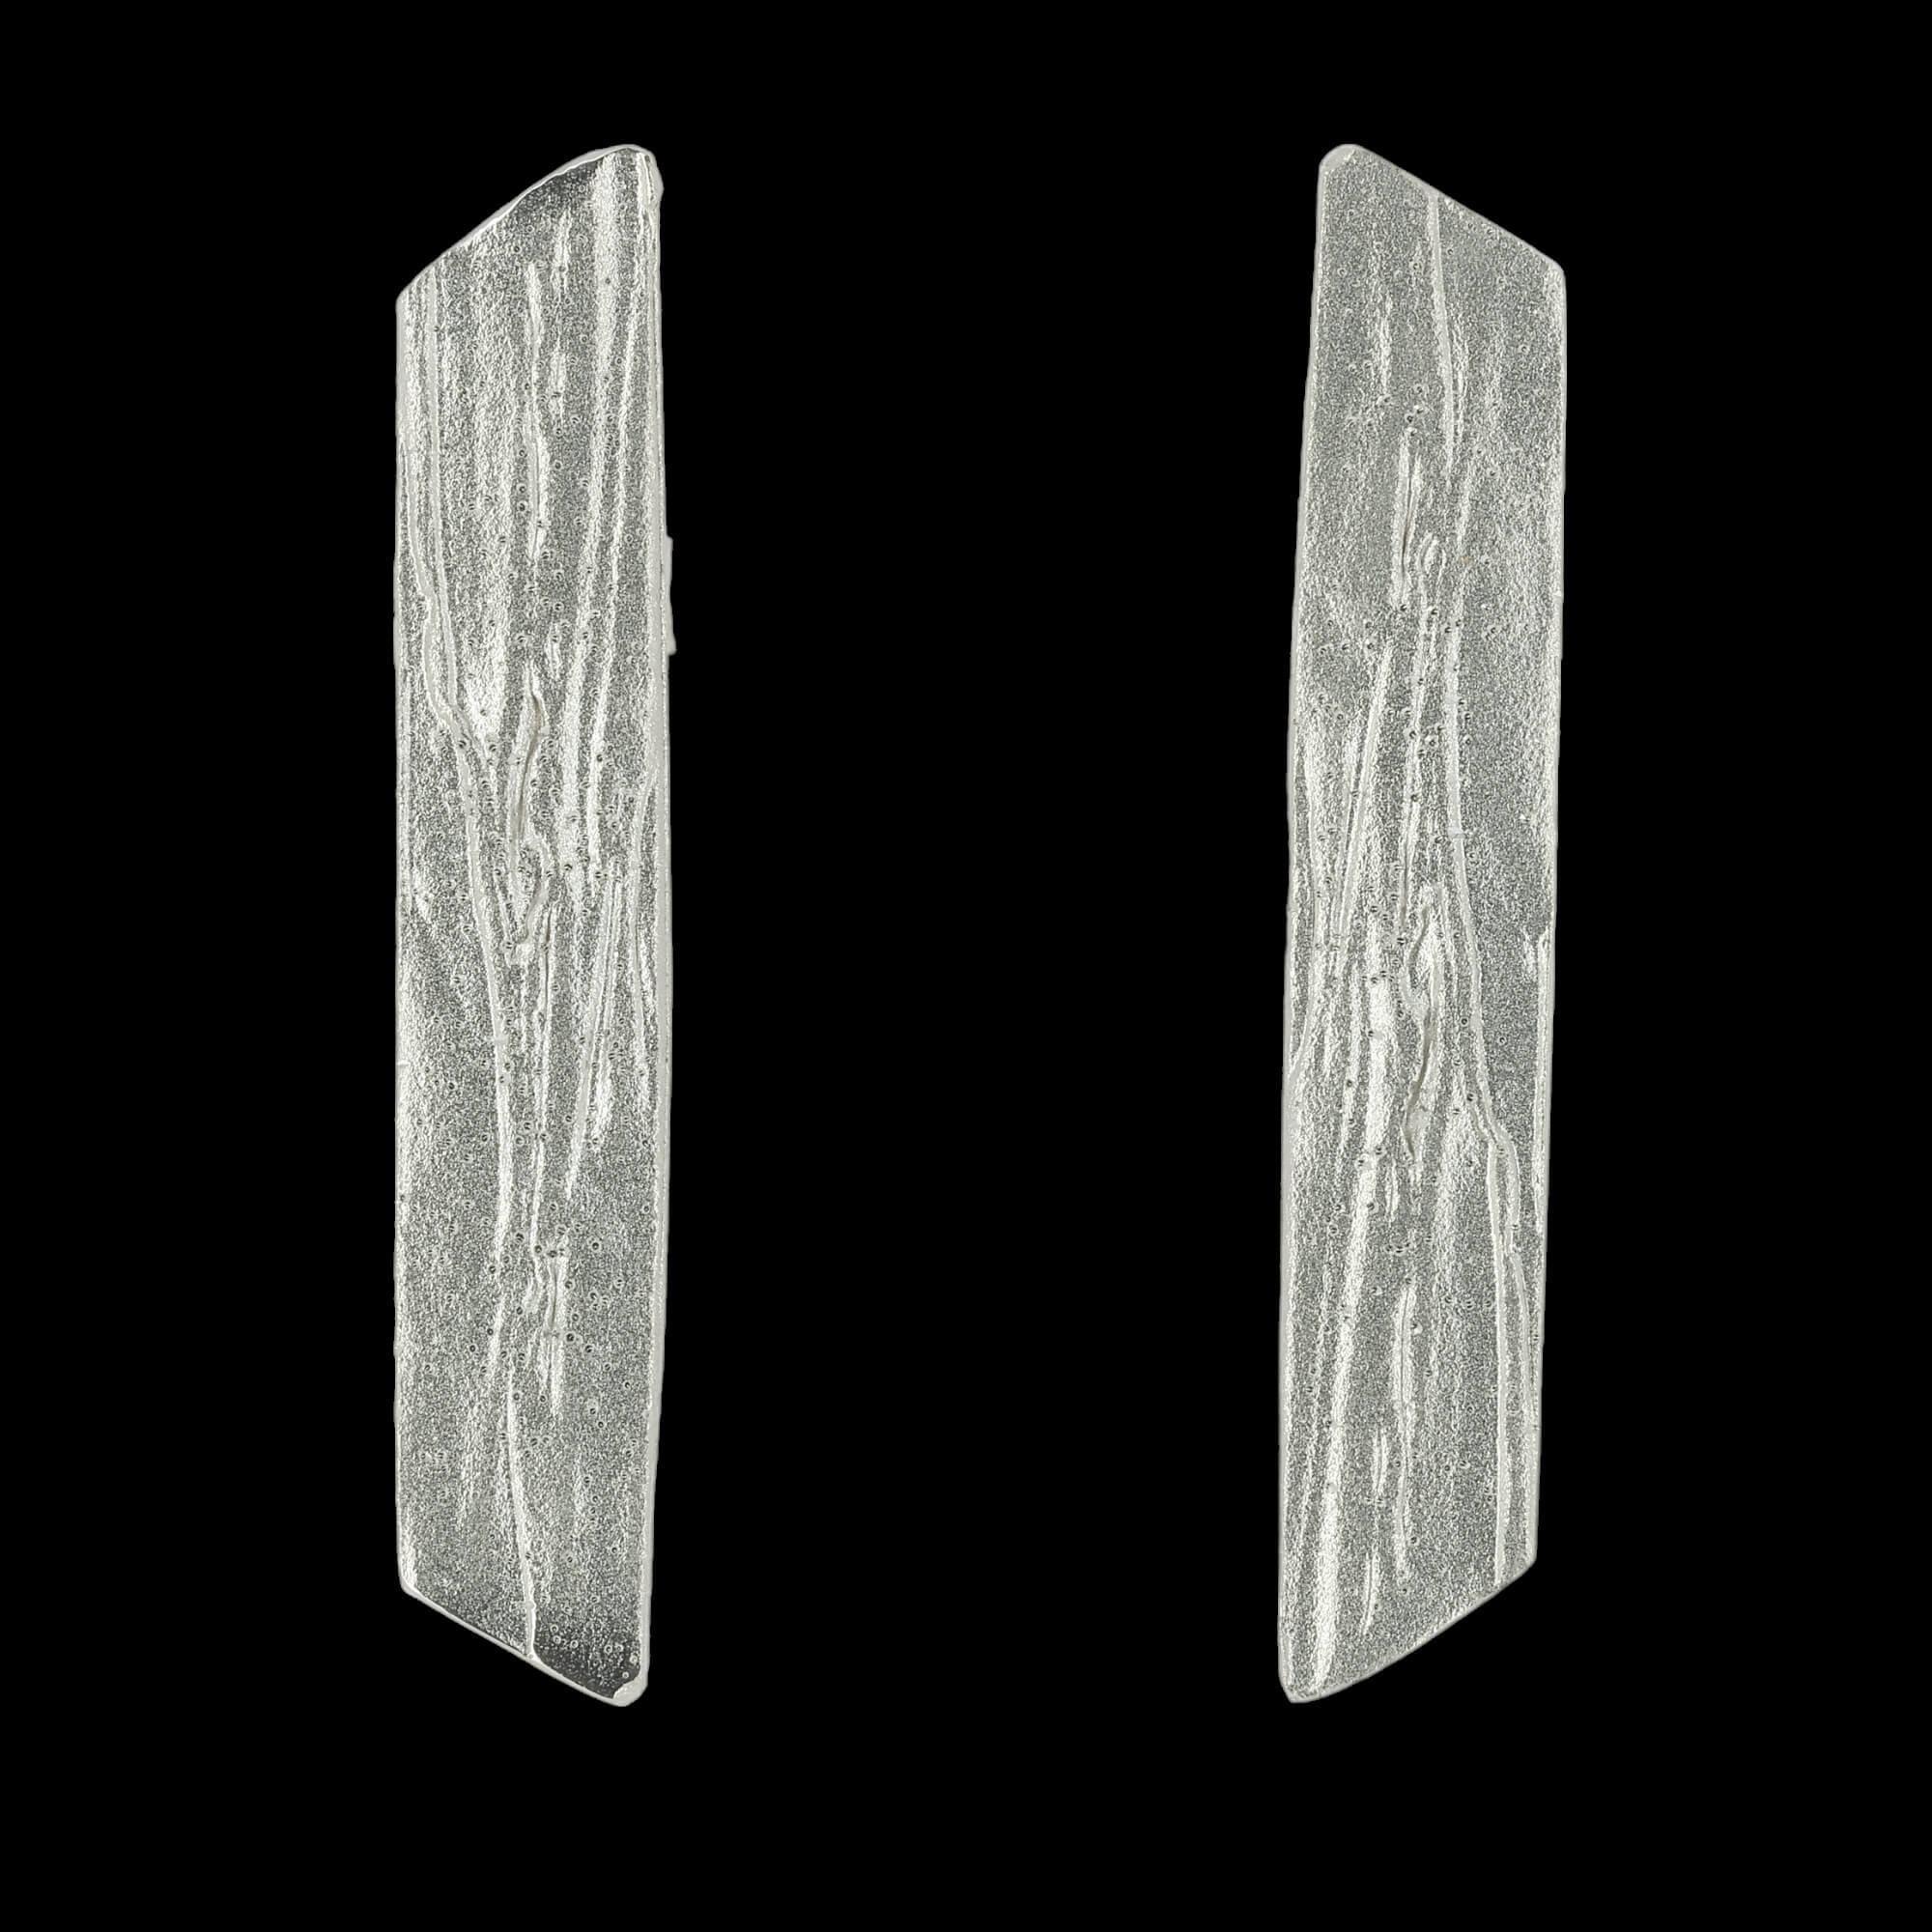 Beautiful silver bars earrings